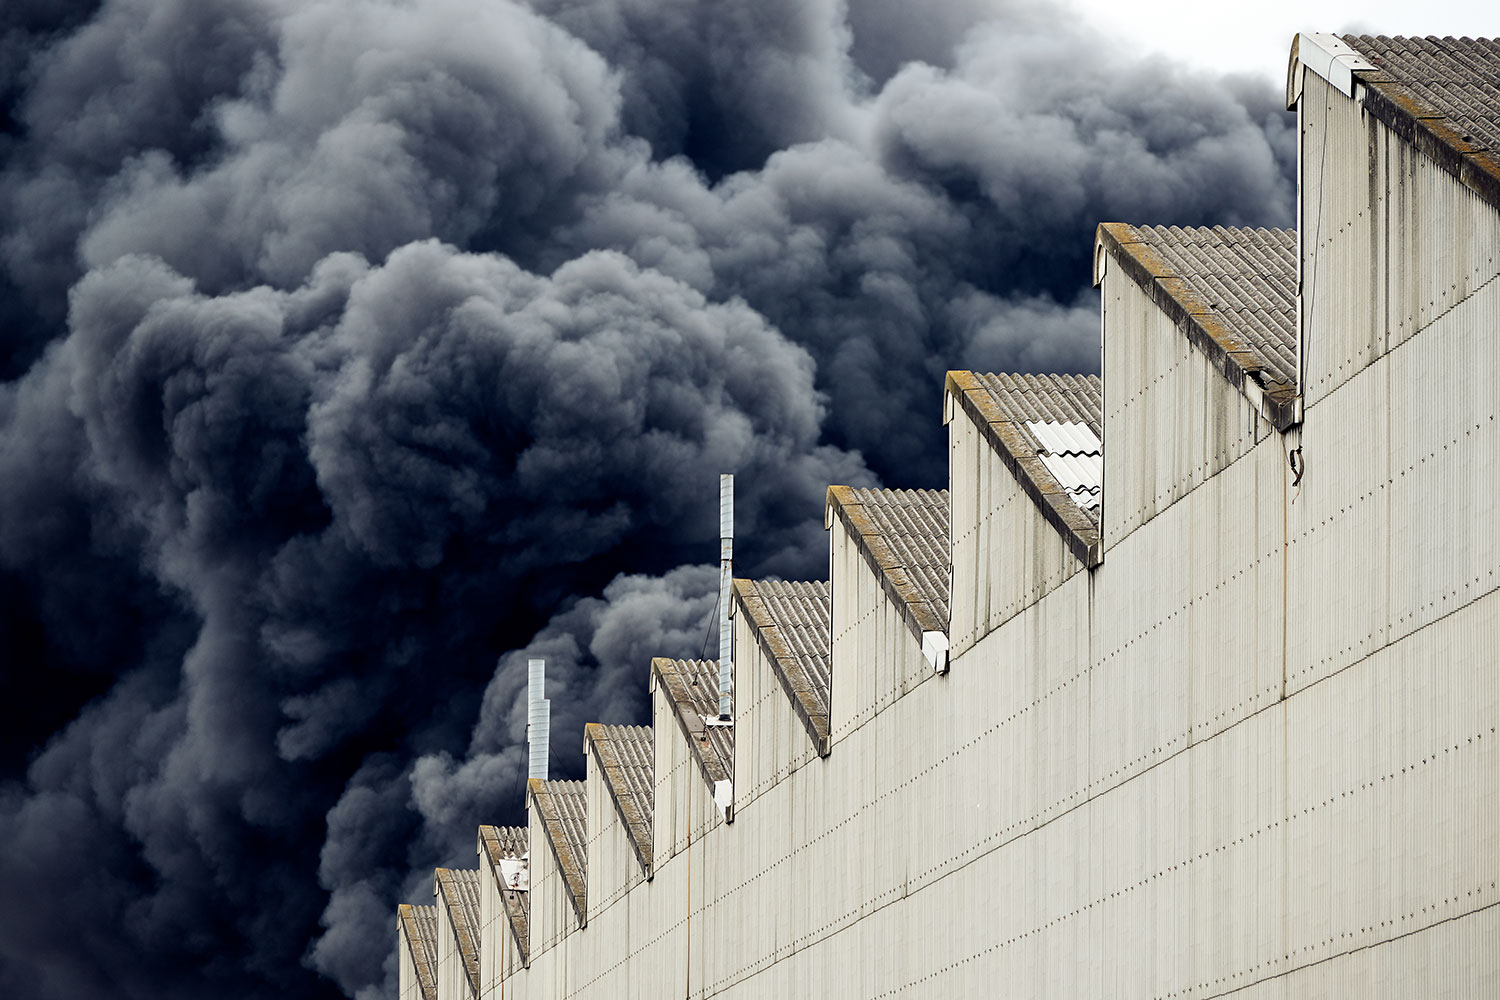 humo negro debido al incendio en una fábrica